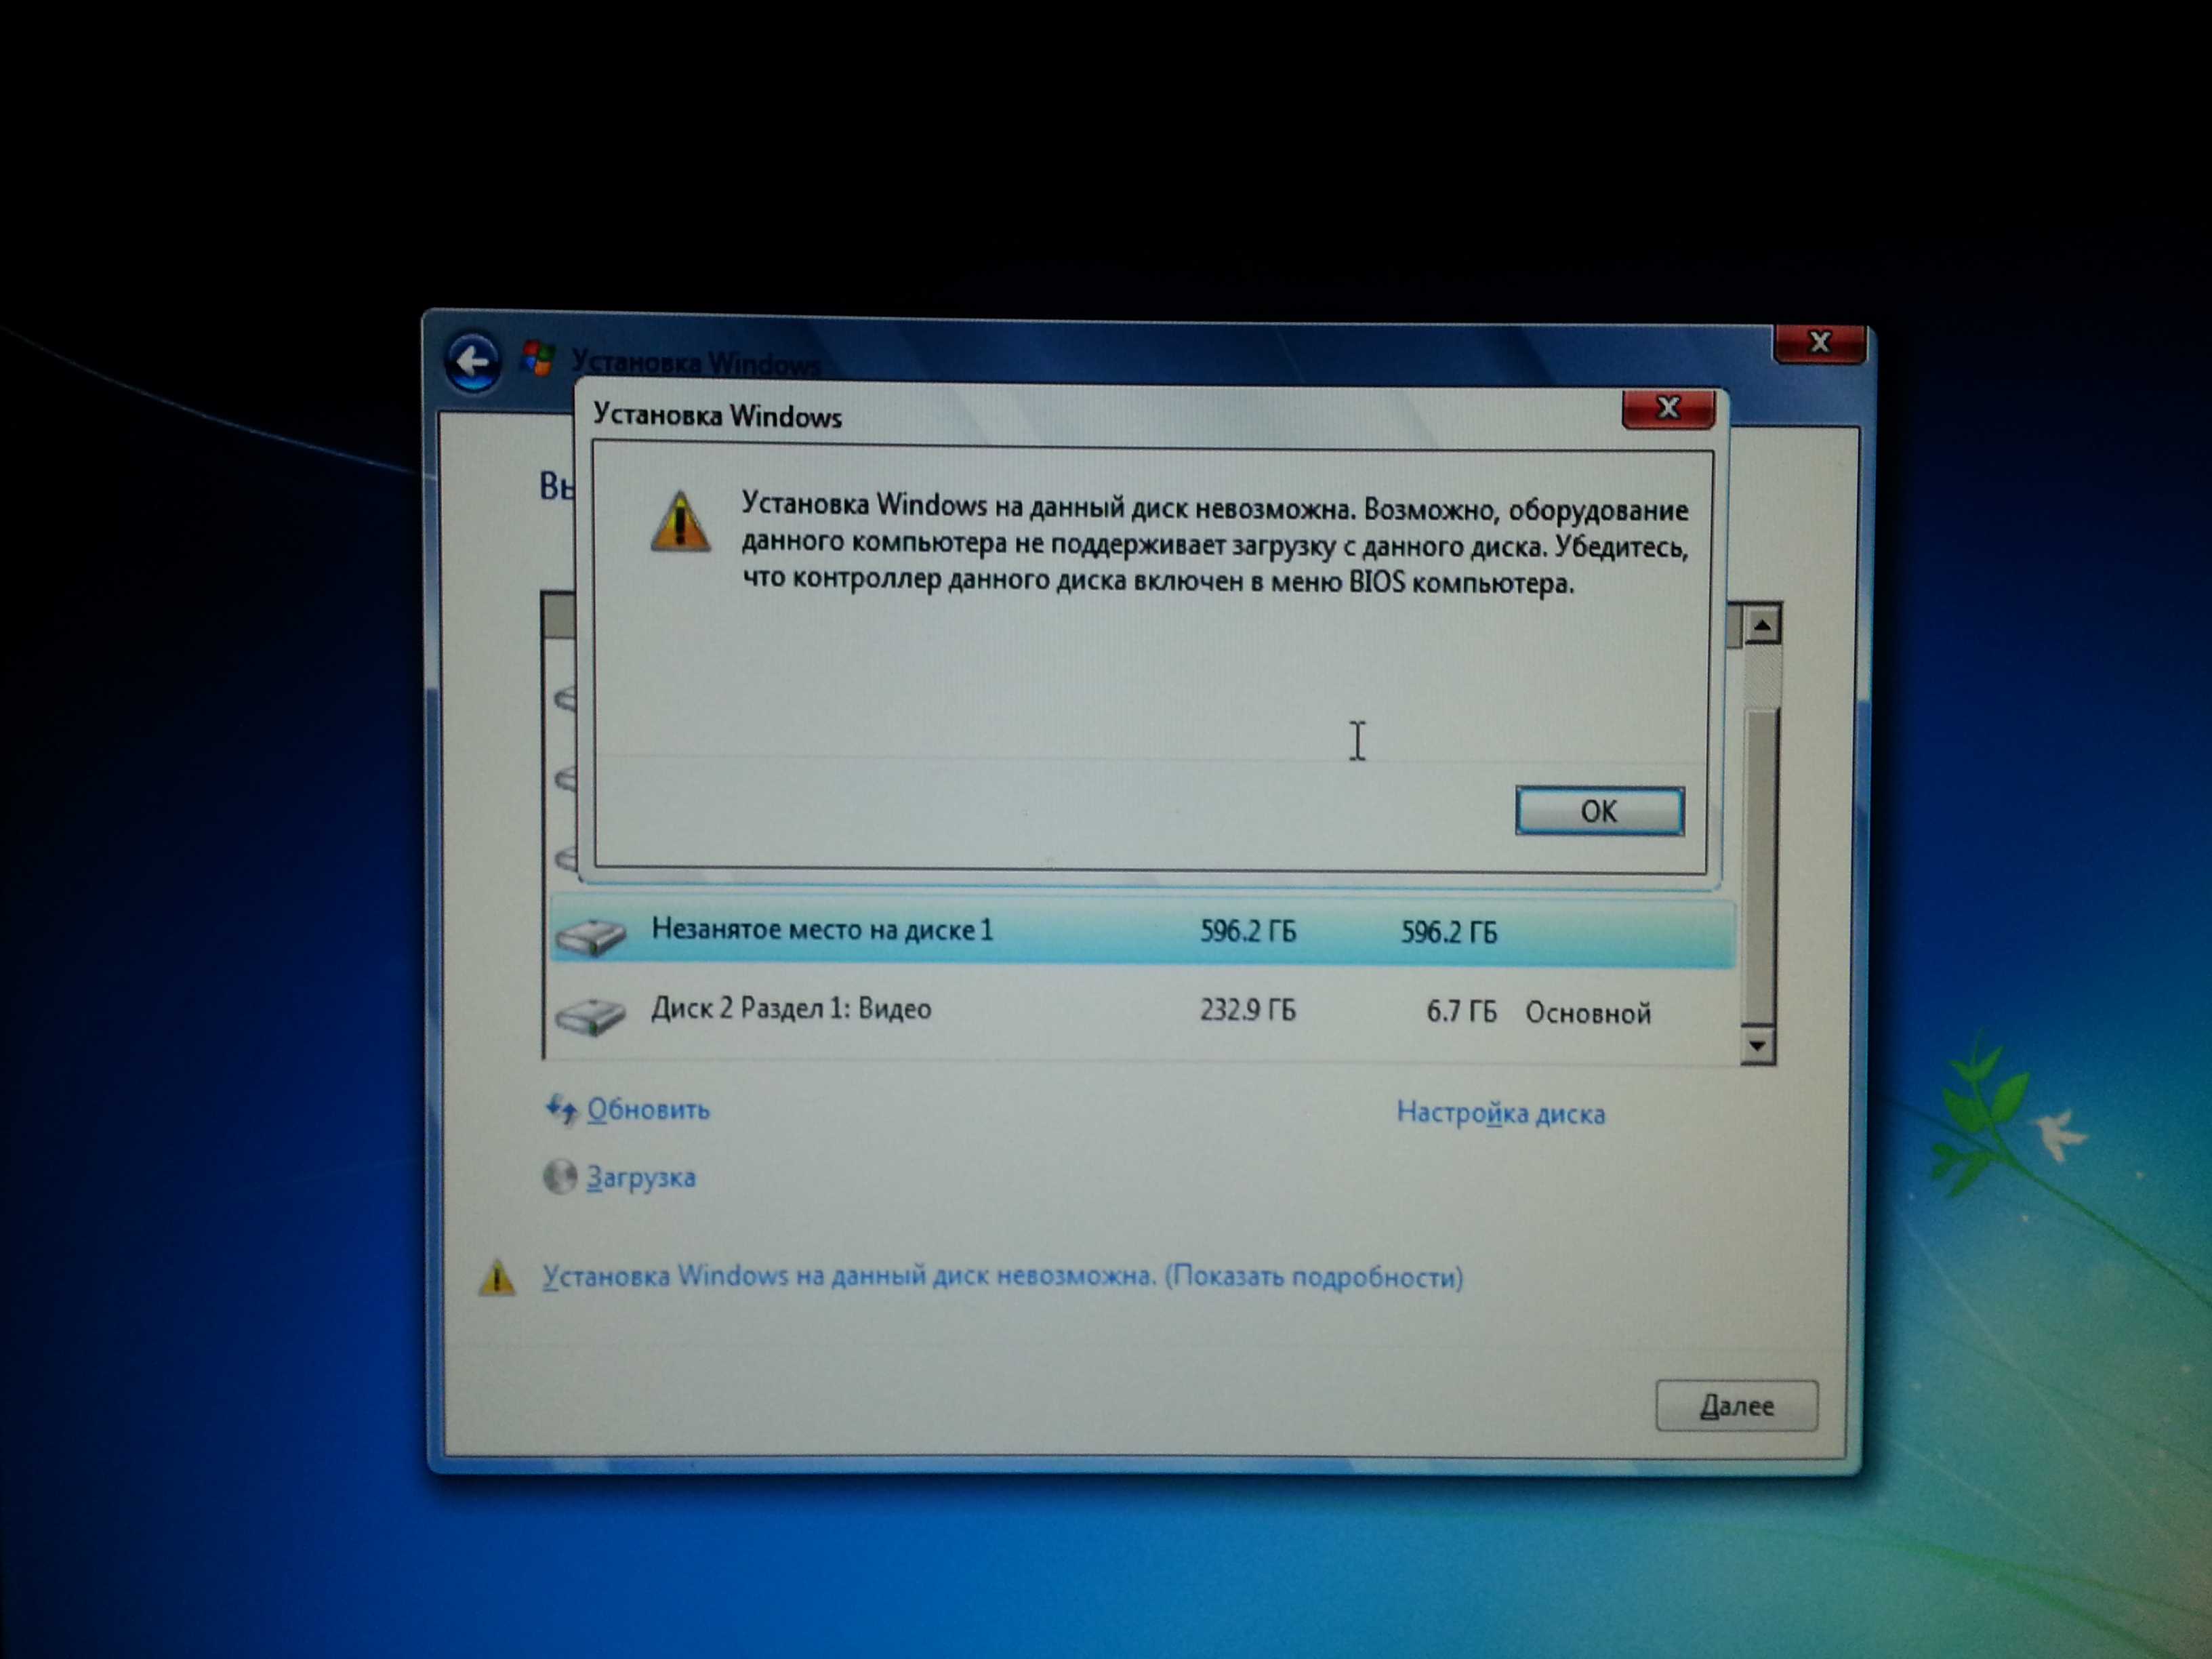 Данная операция невозможна. Установка виндовс на.данный диск невозможно. Установка Windows на данный диск невозможна. Установка Windows невозможна выбранный диск. Установка Windows на данный диск.